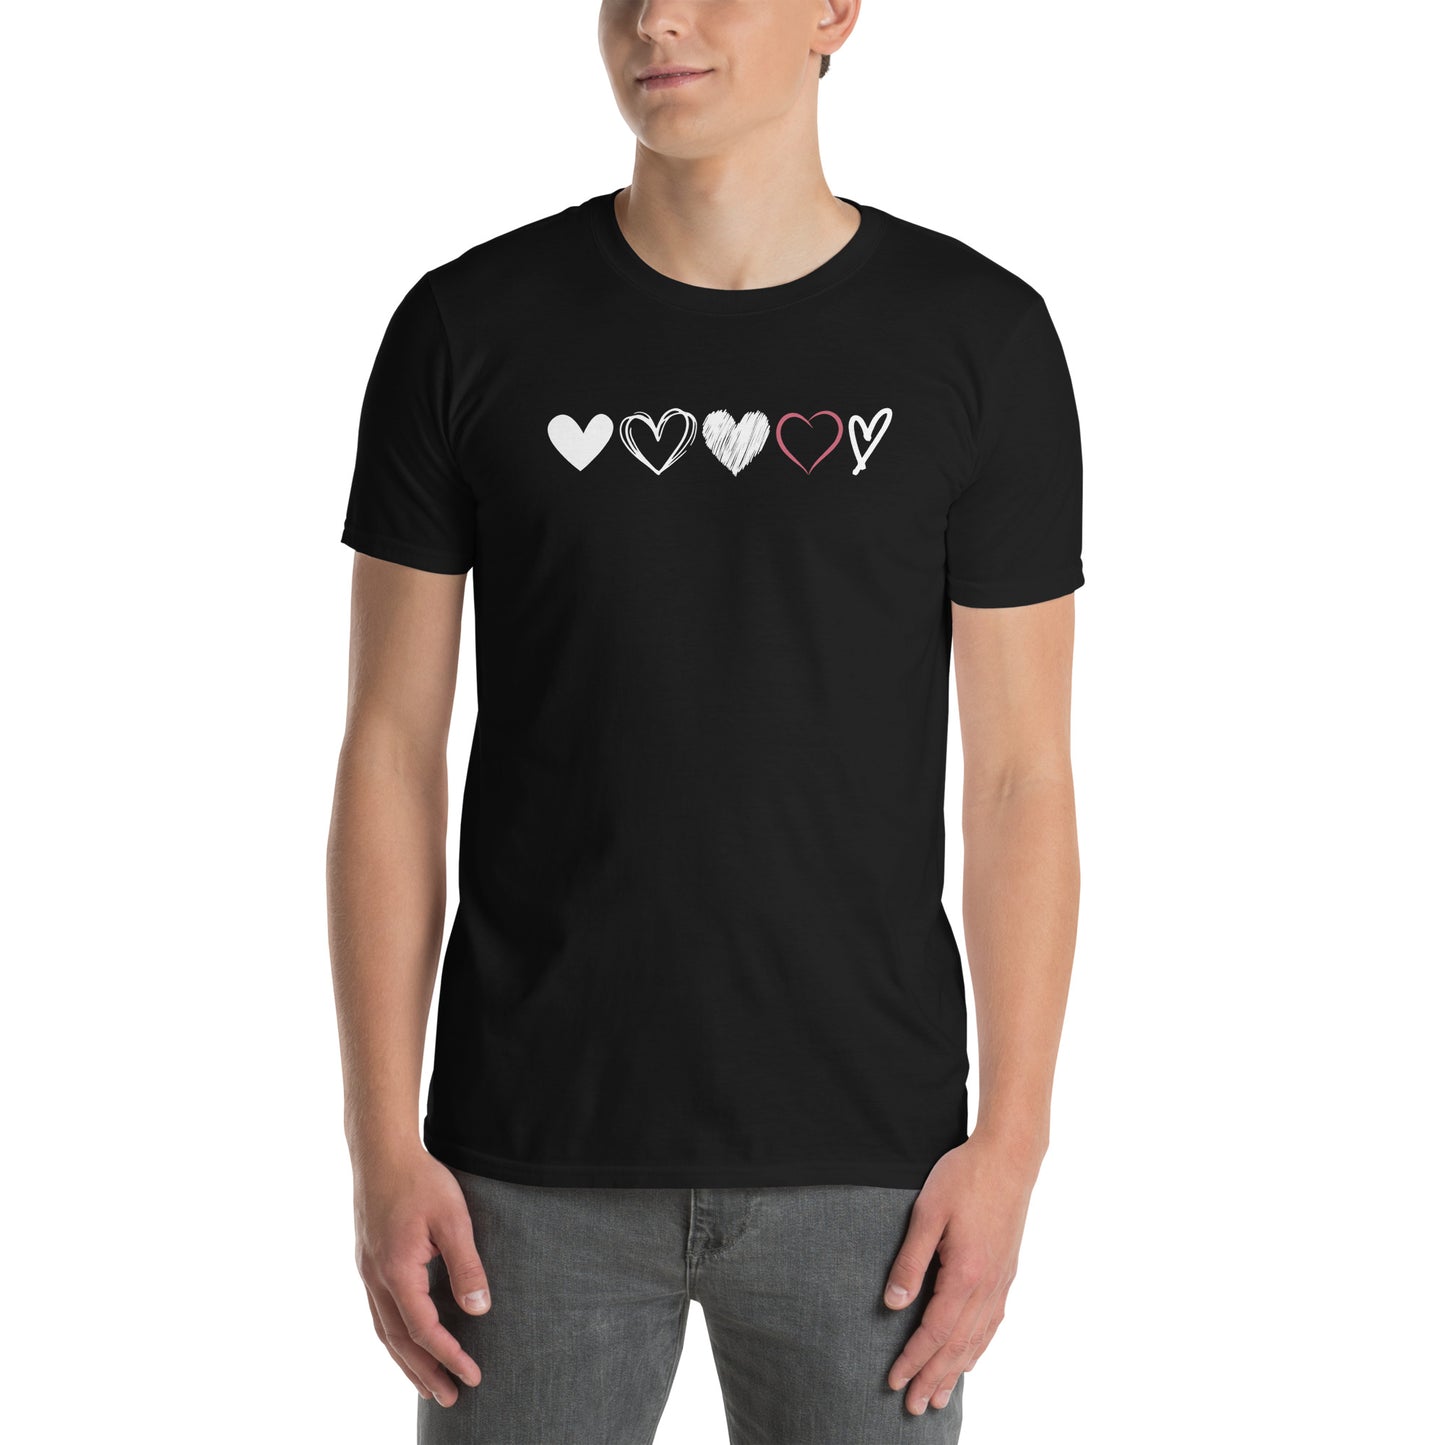 Unisex marškinėliai: Širdučių eilutė